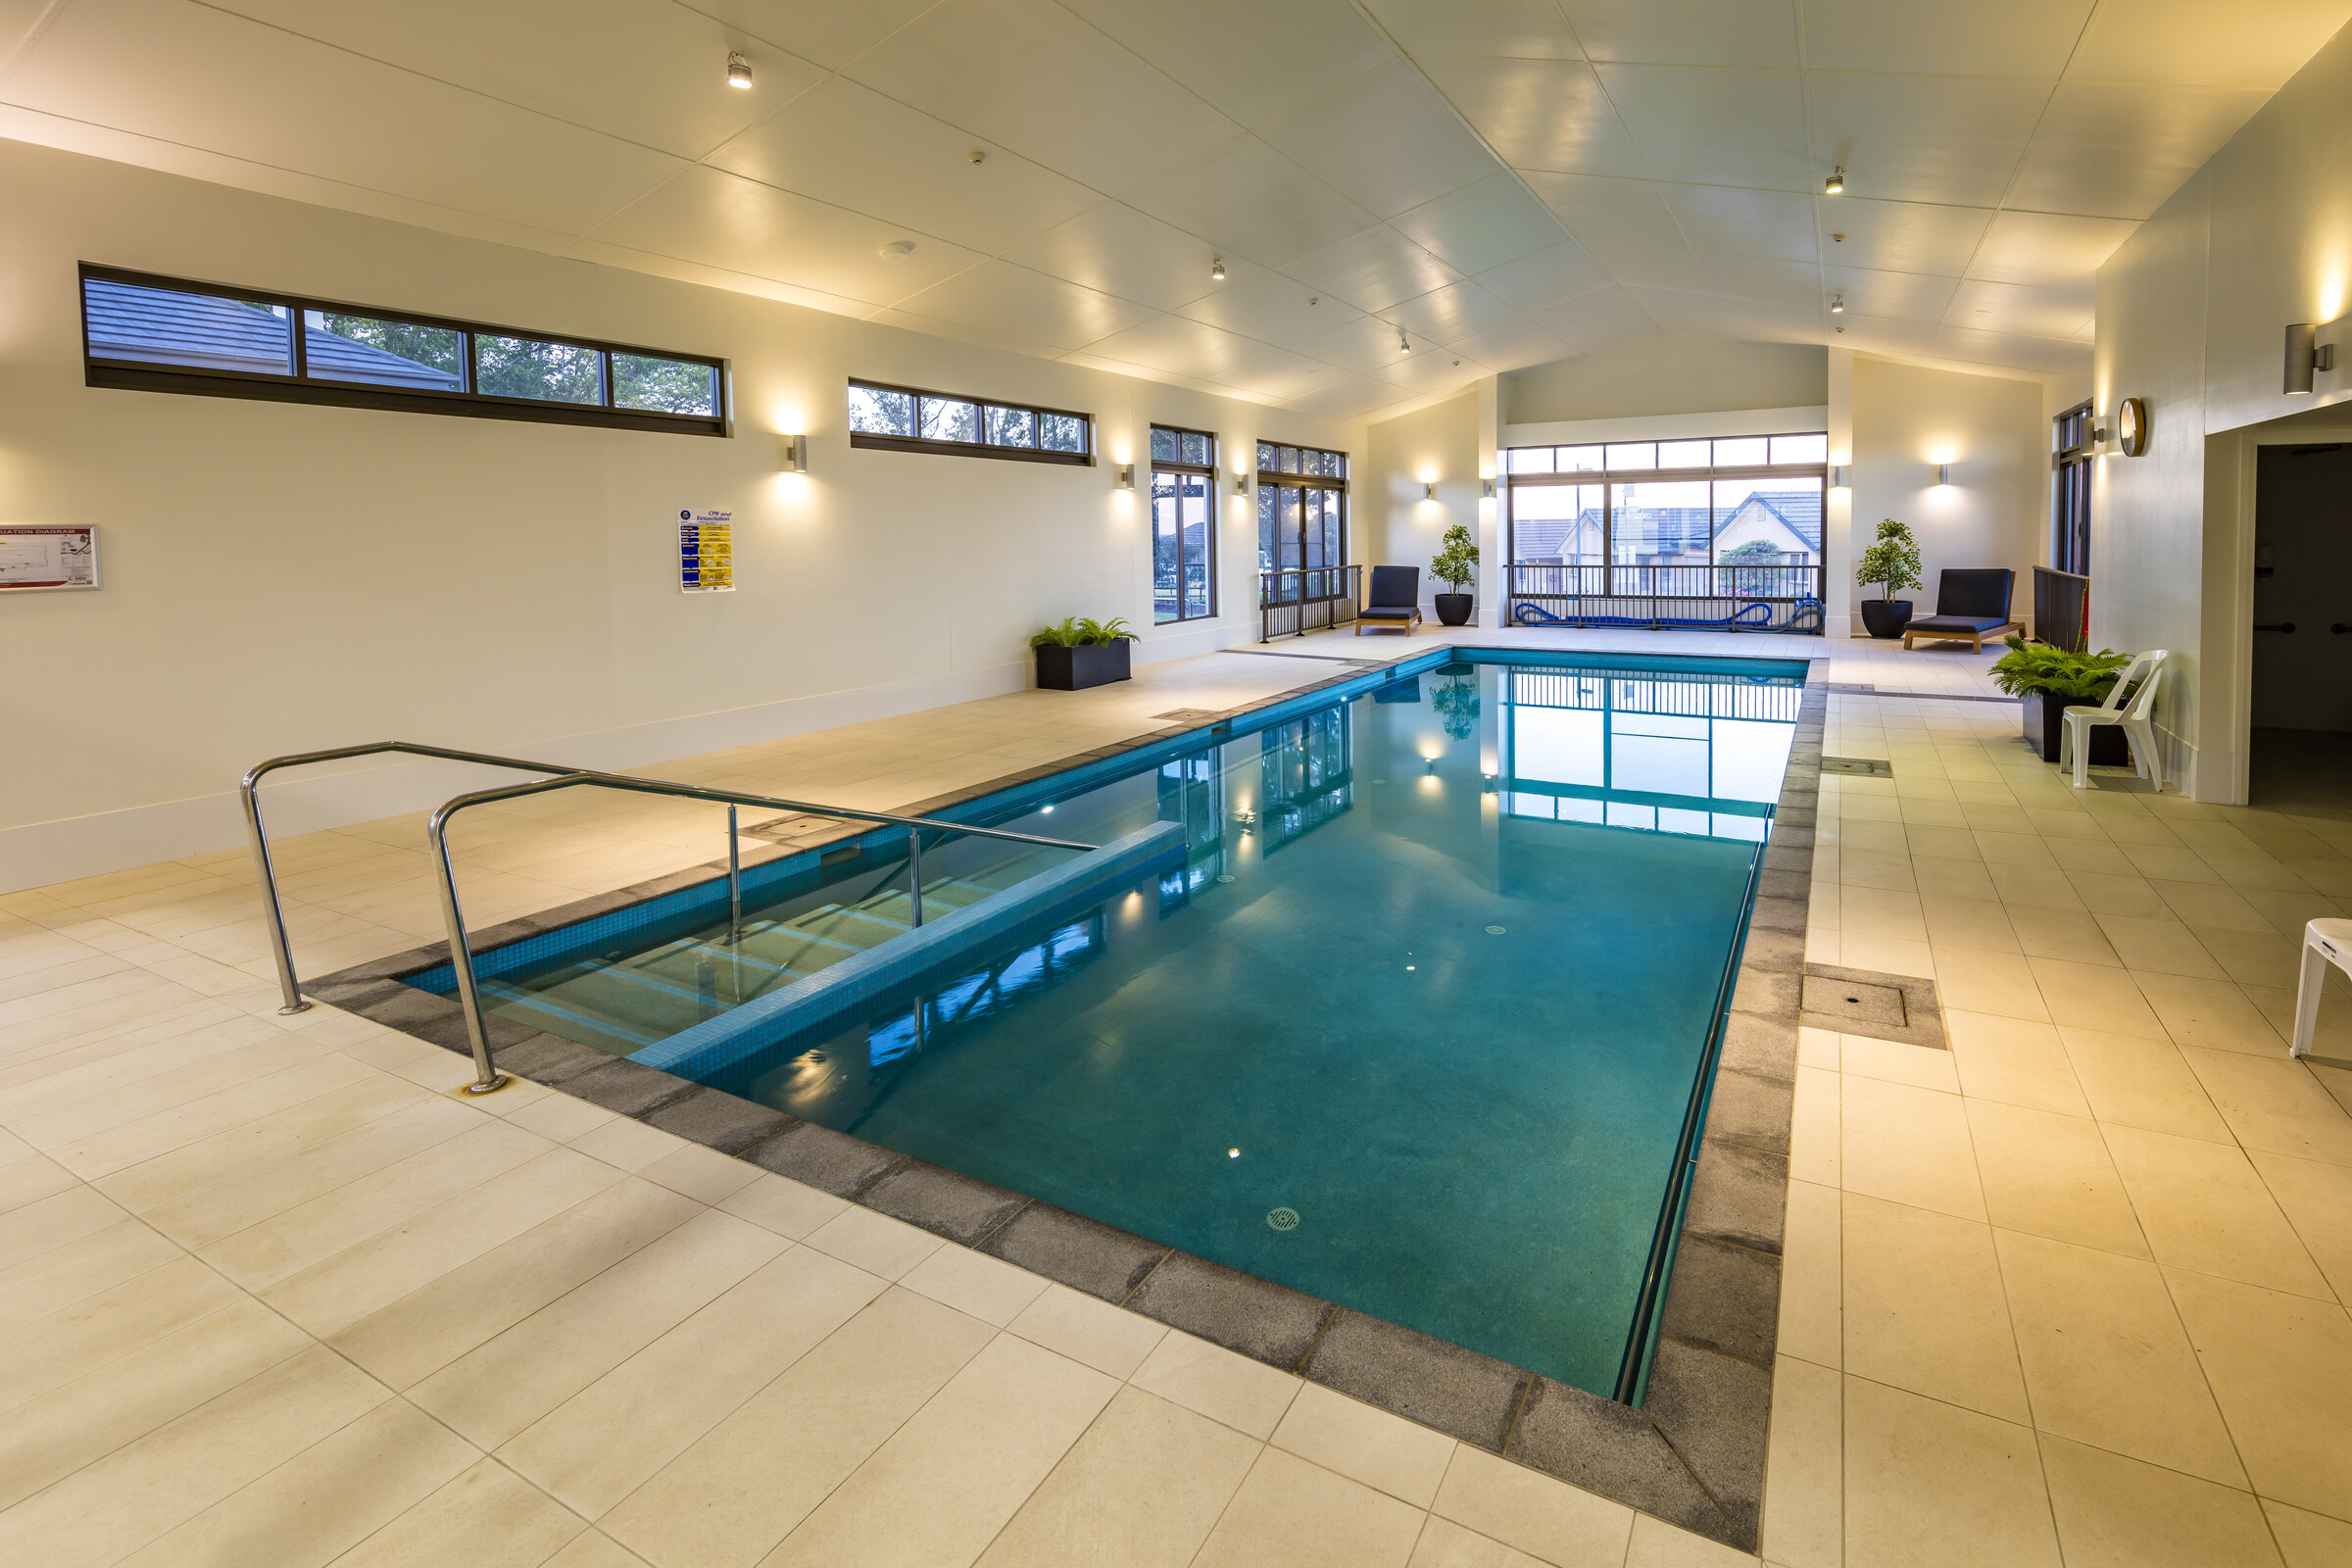 Closebourne Village Indoor Swimming pool